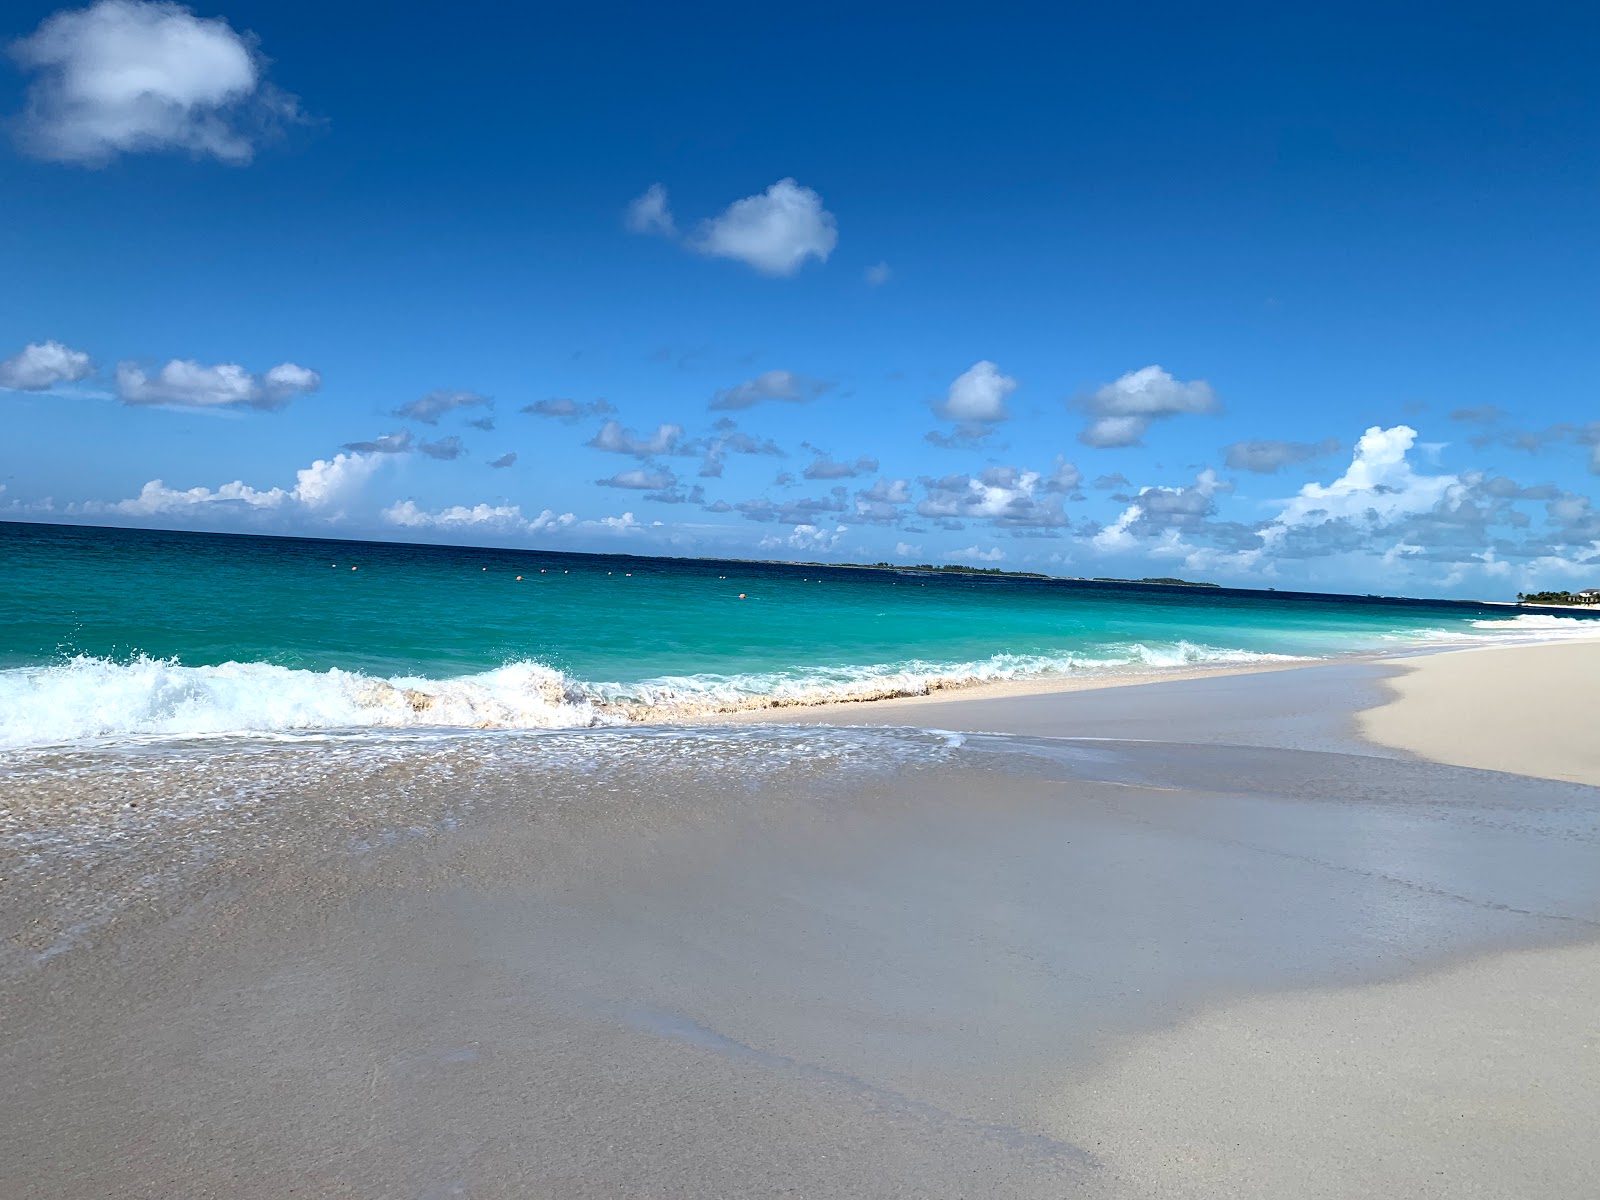 Foto af Paradise beach - populært sted blandt afslapningskendere